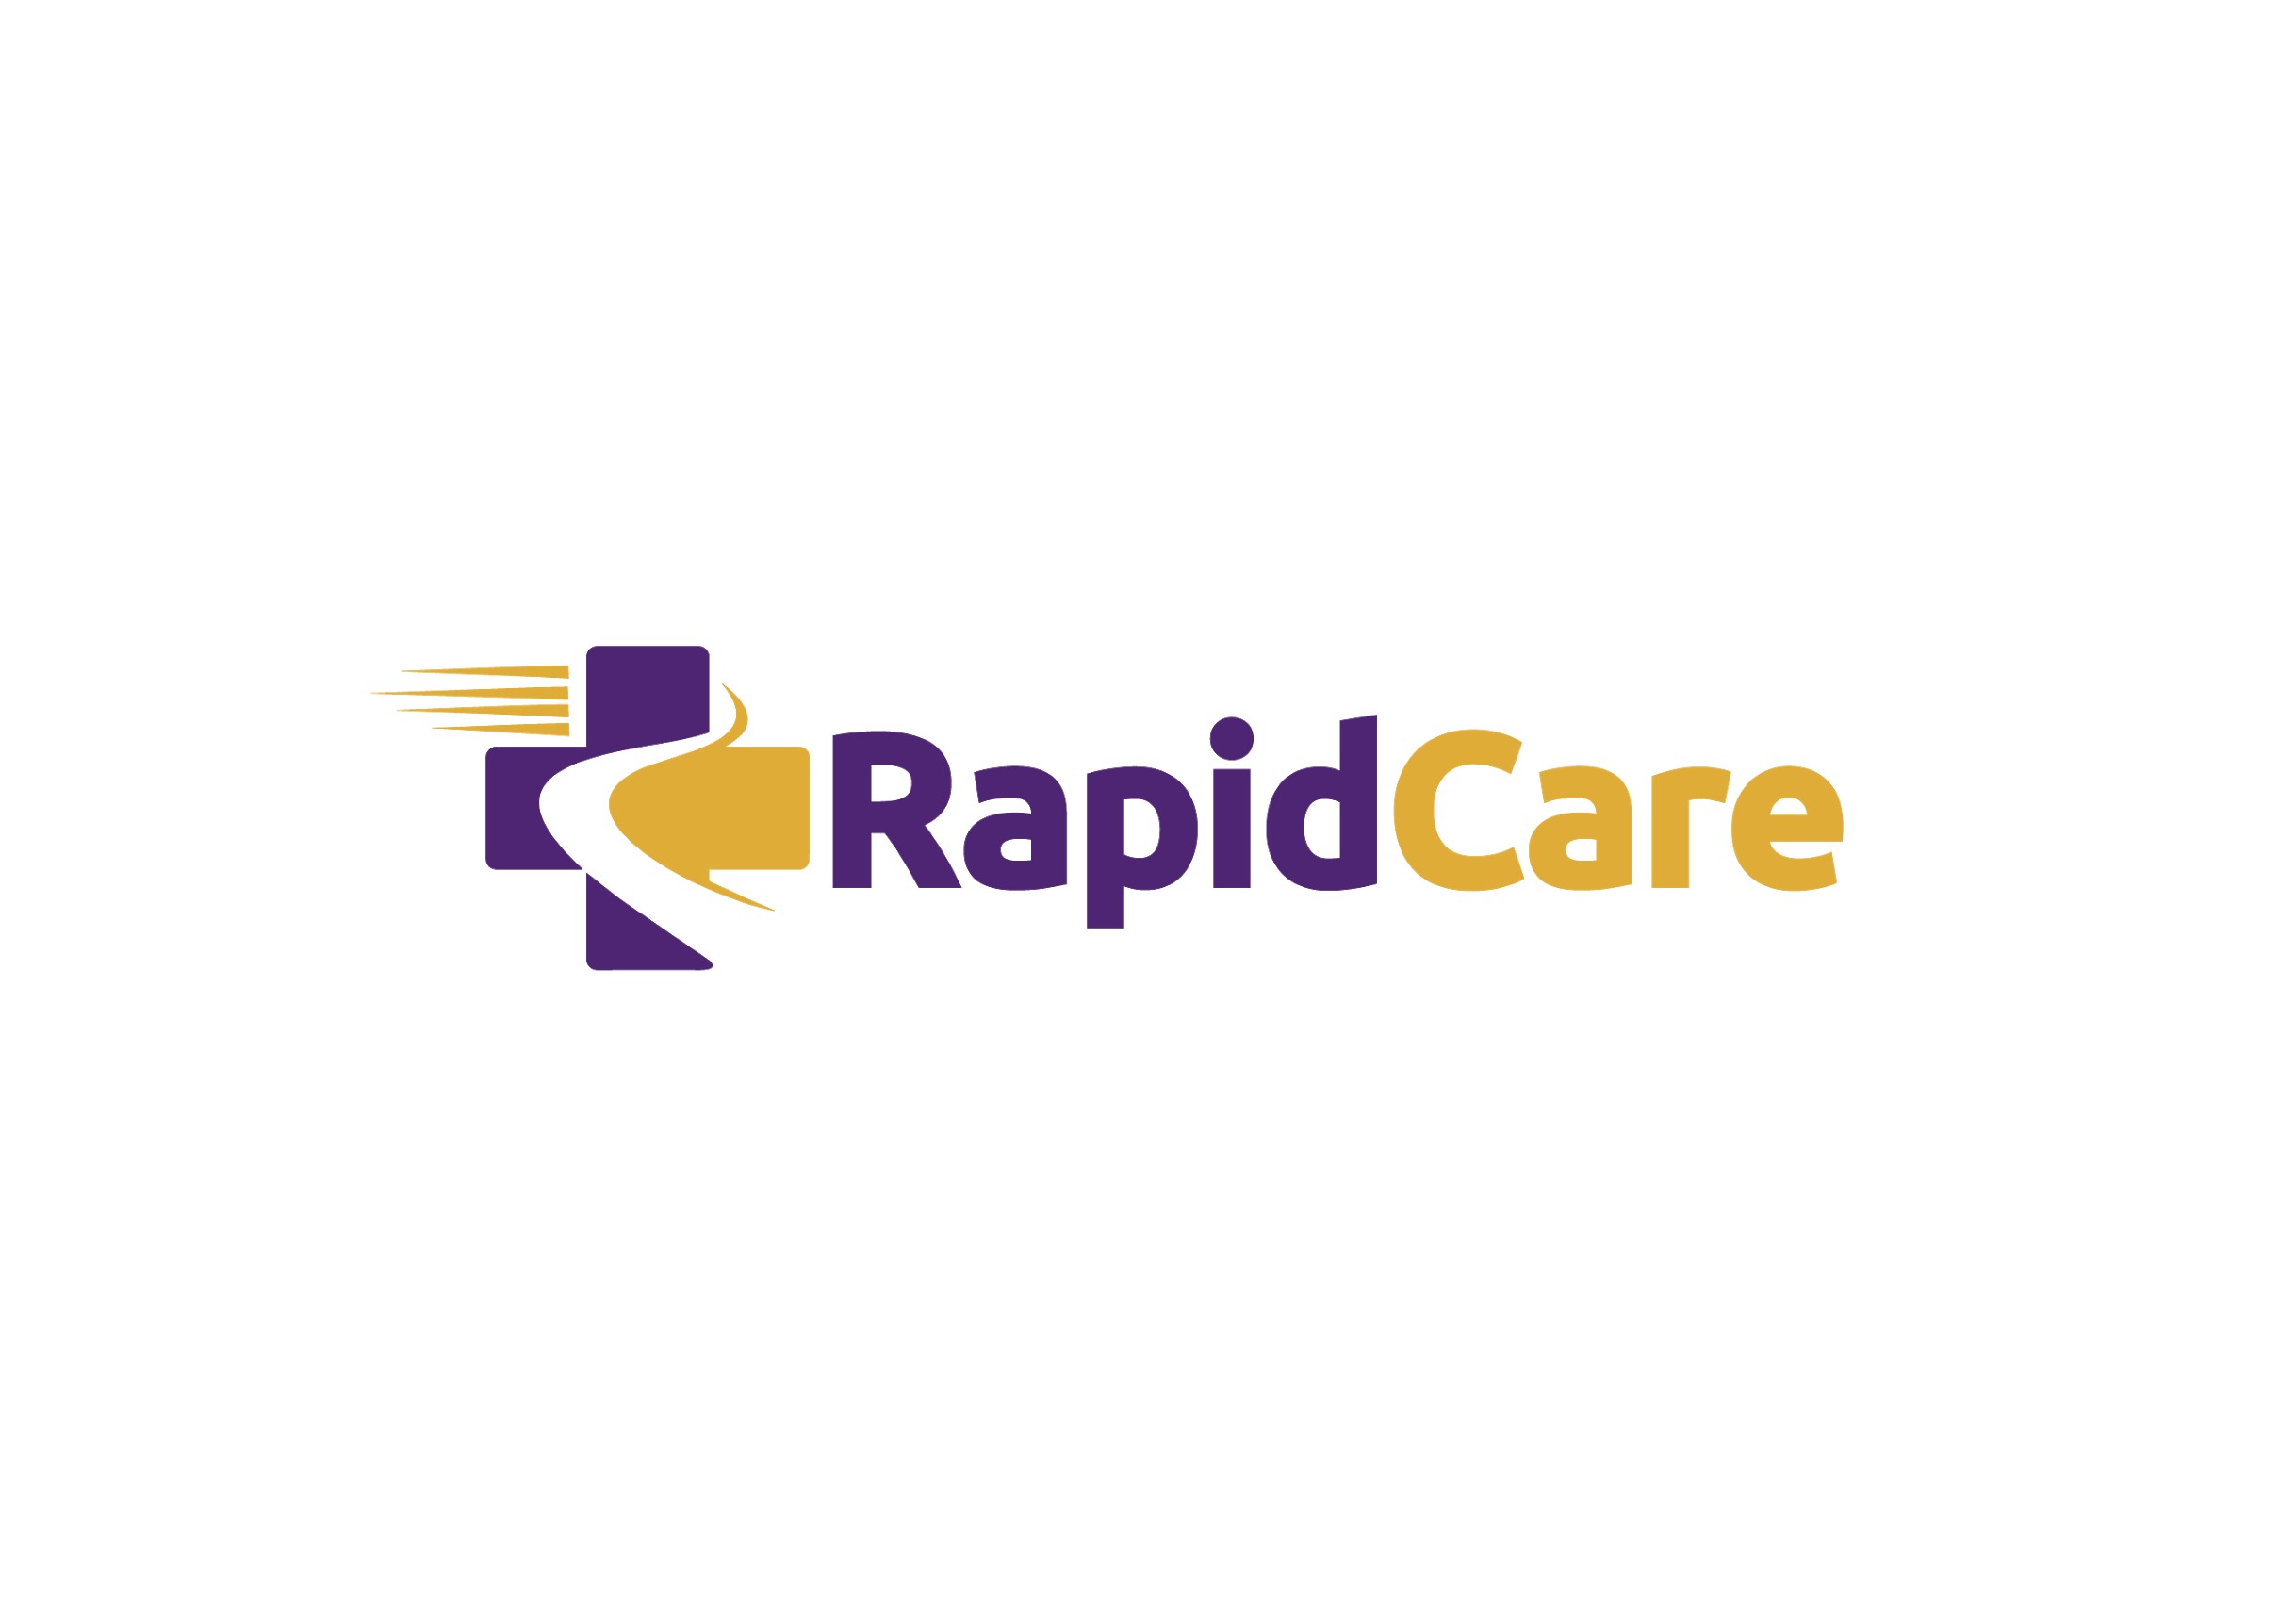 Rapid Care